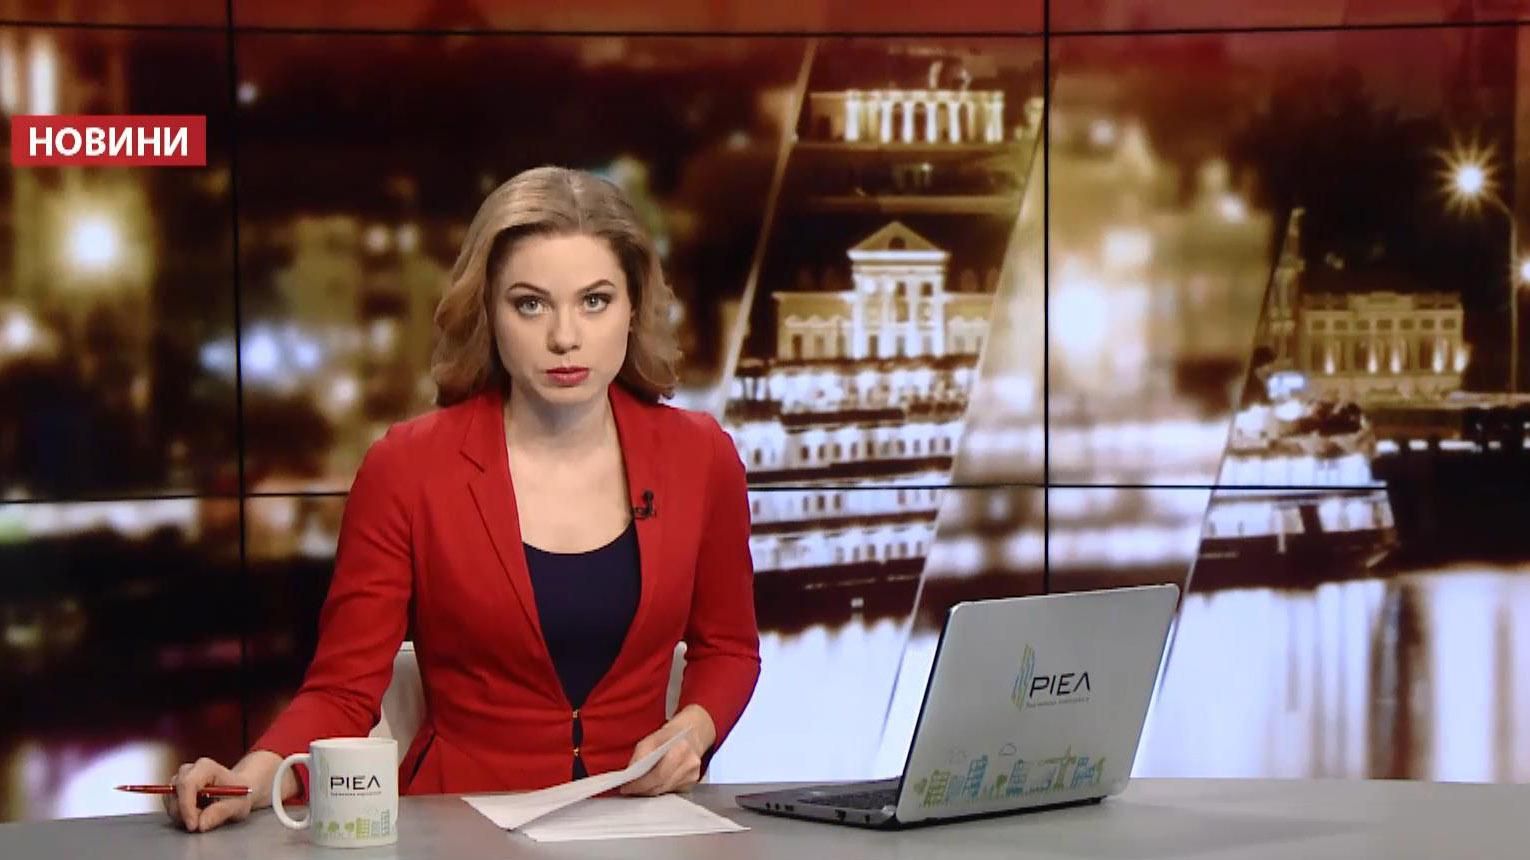 Випуск новин за 23:00: Подробиці вибуху у Львові. Виборчі перегони Трампа і Клінтон